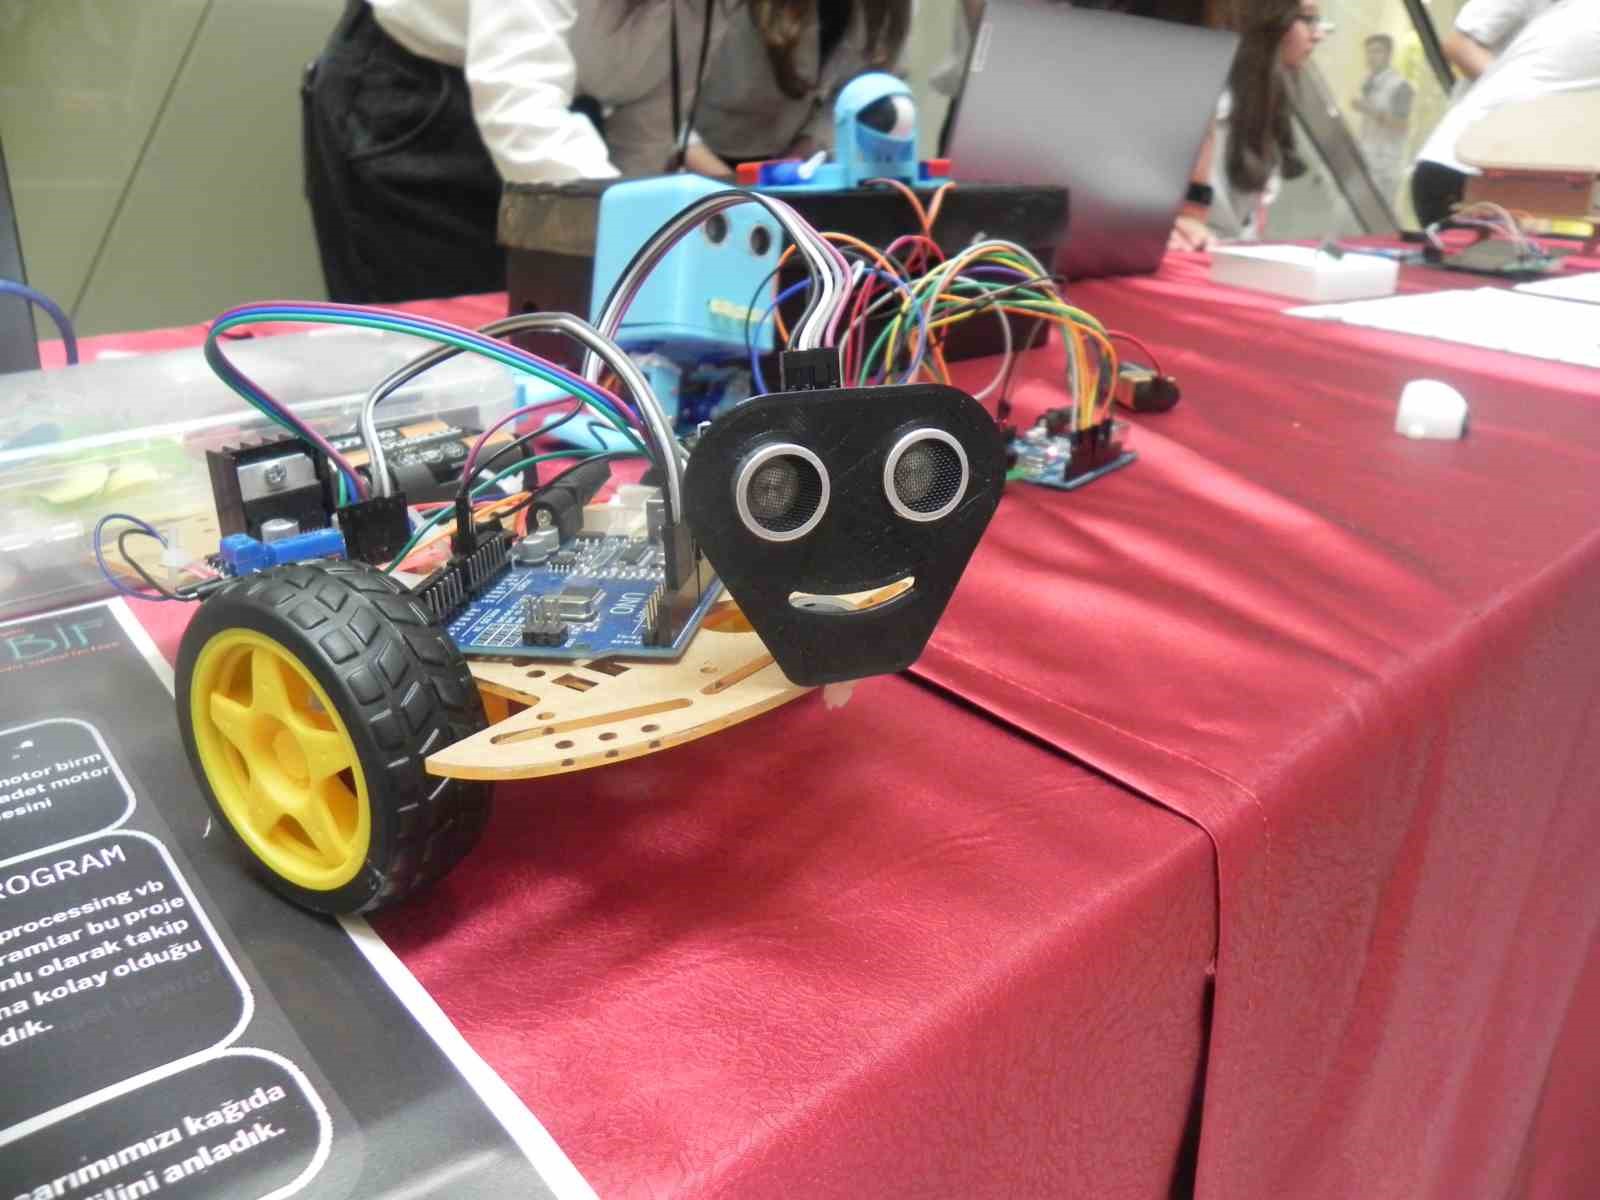 Liseli öğrencilerin Robotik ve Kodlama Sergisi